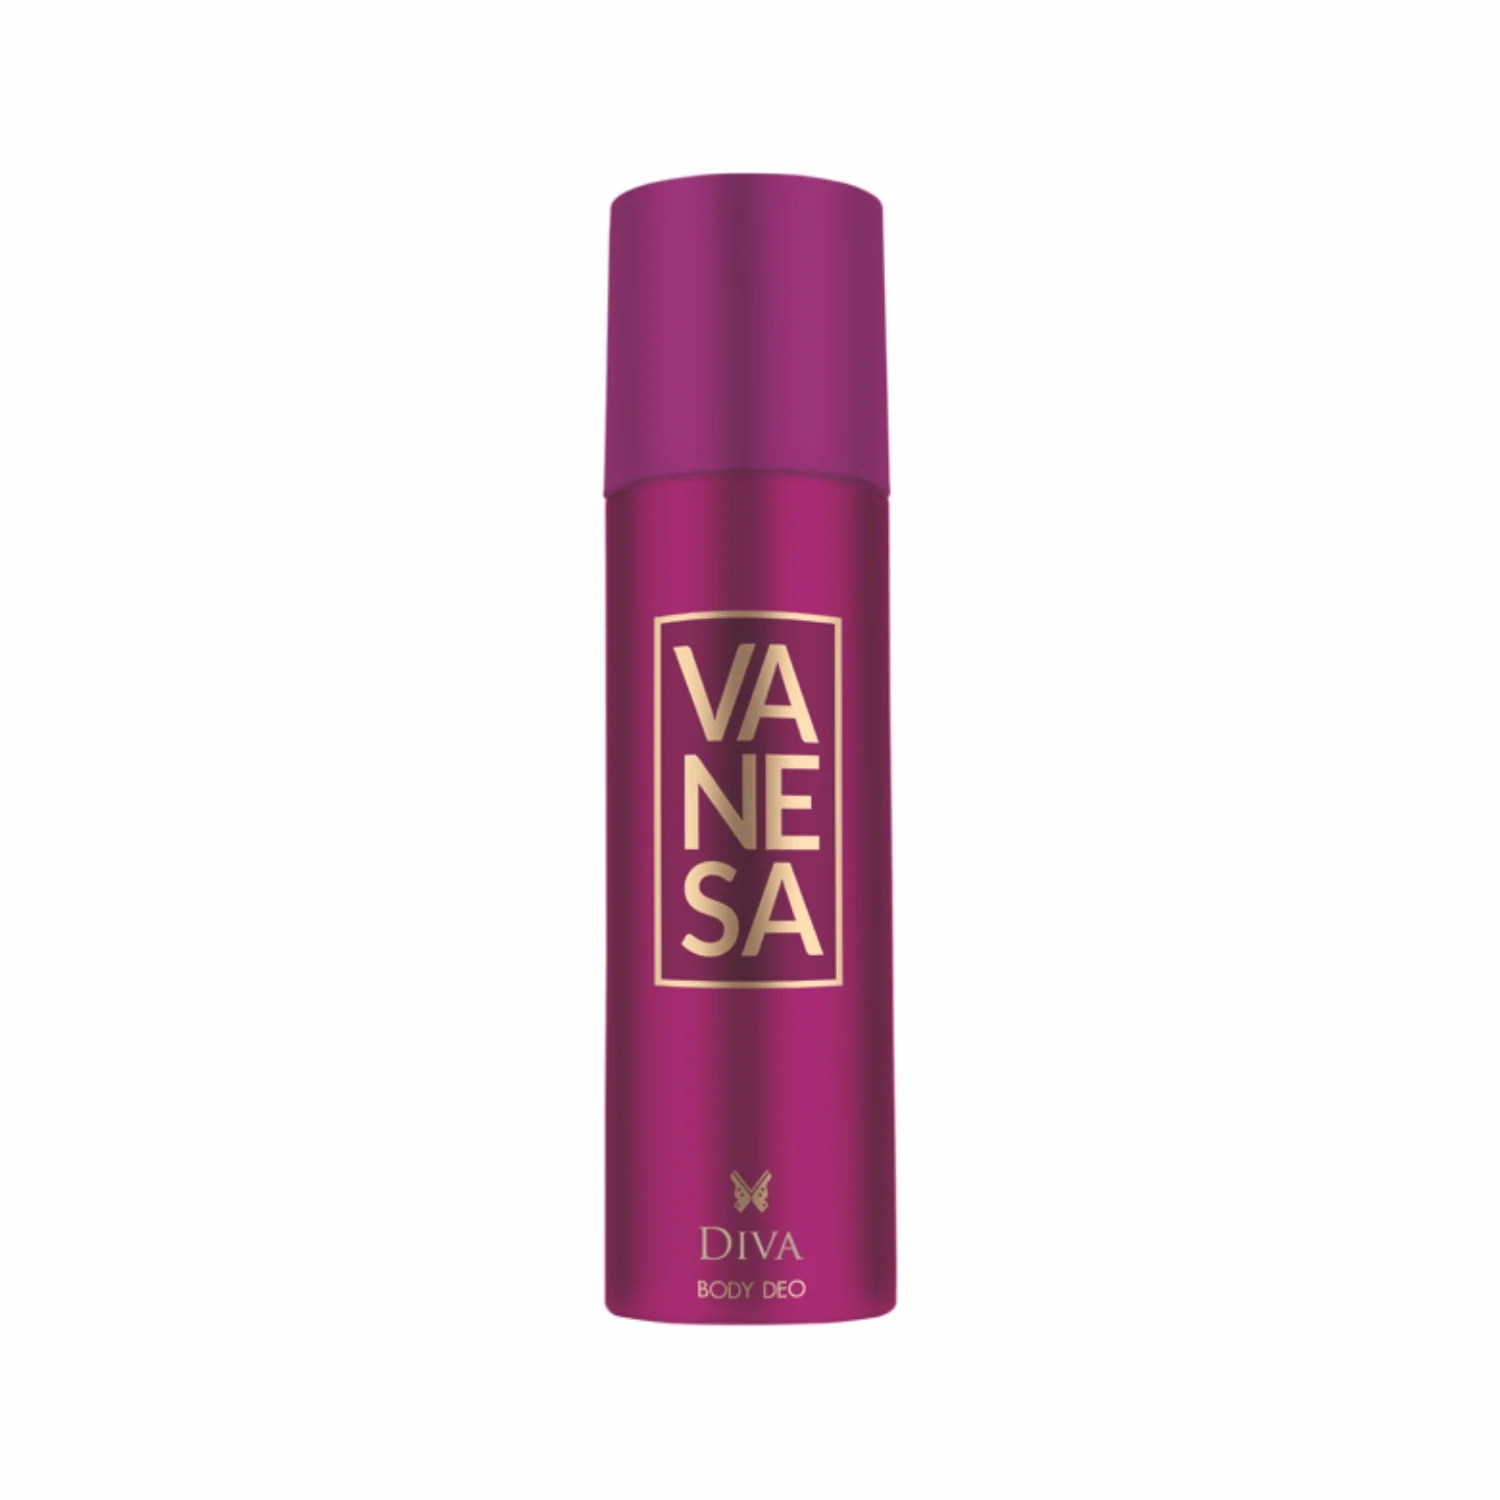 Vanesa  Body Deodorant Long Lasting Freshness